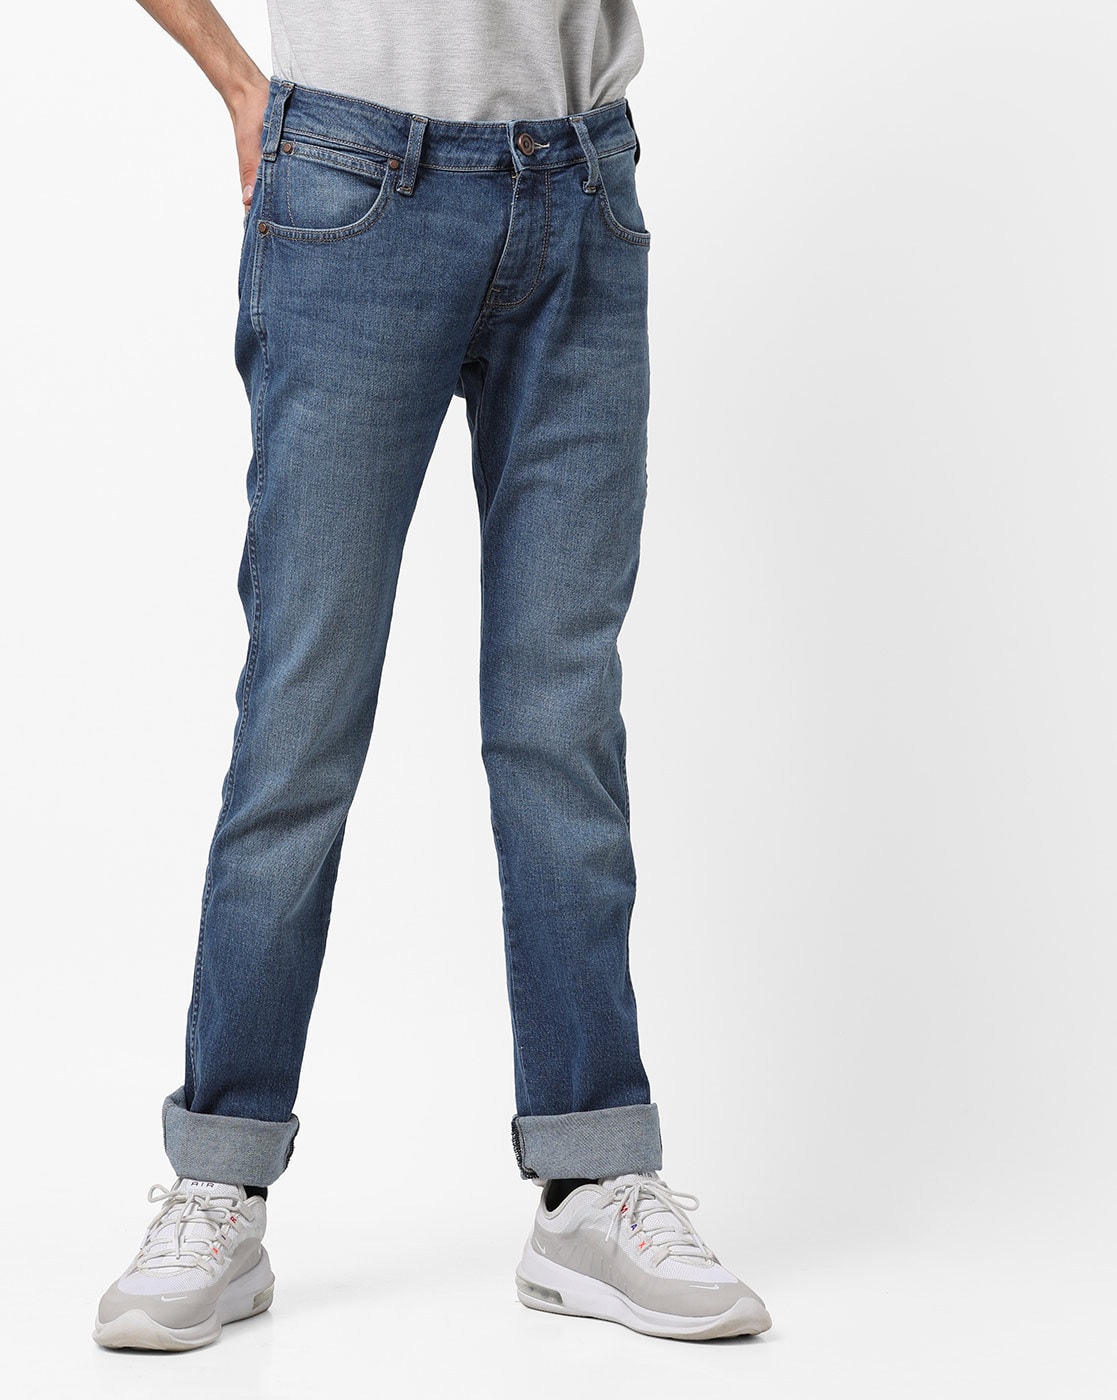 Buy Blue Jeans for Men by WRANGLER 